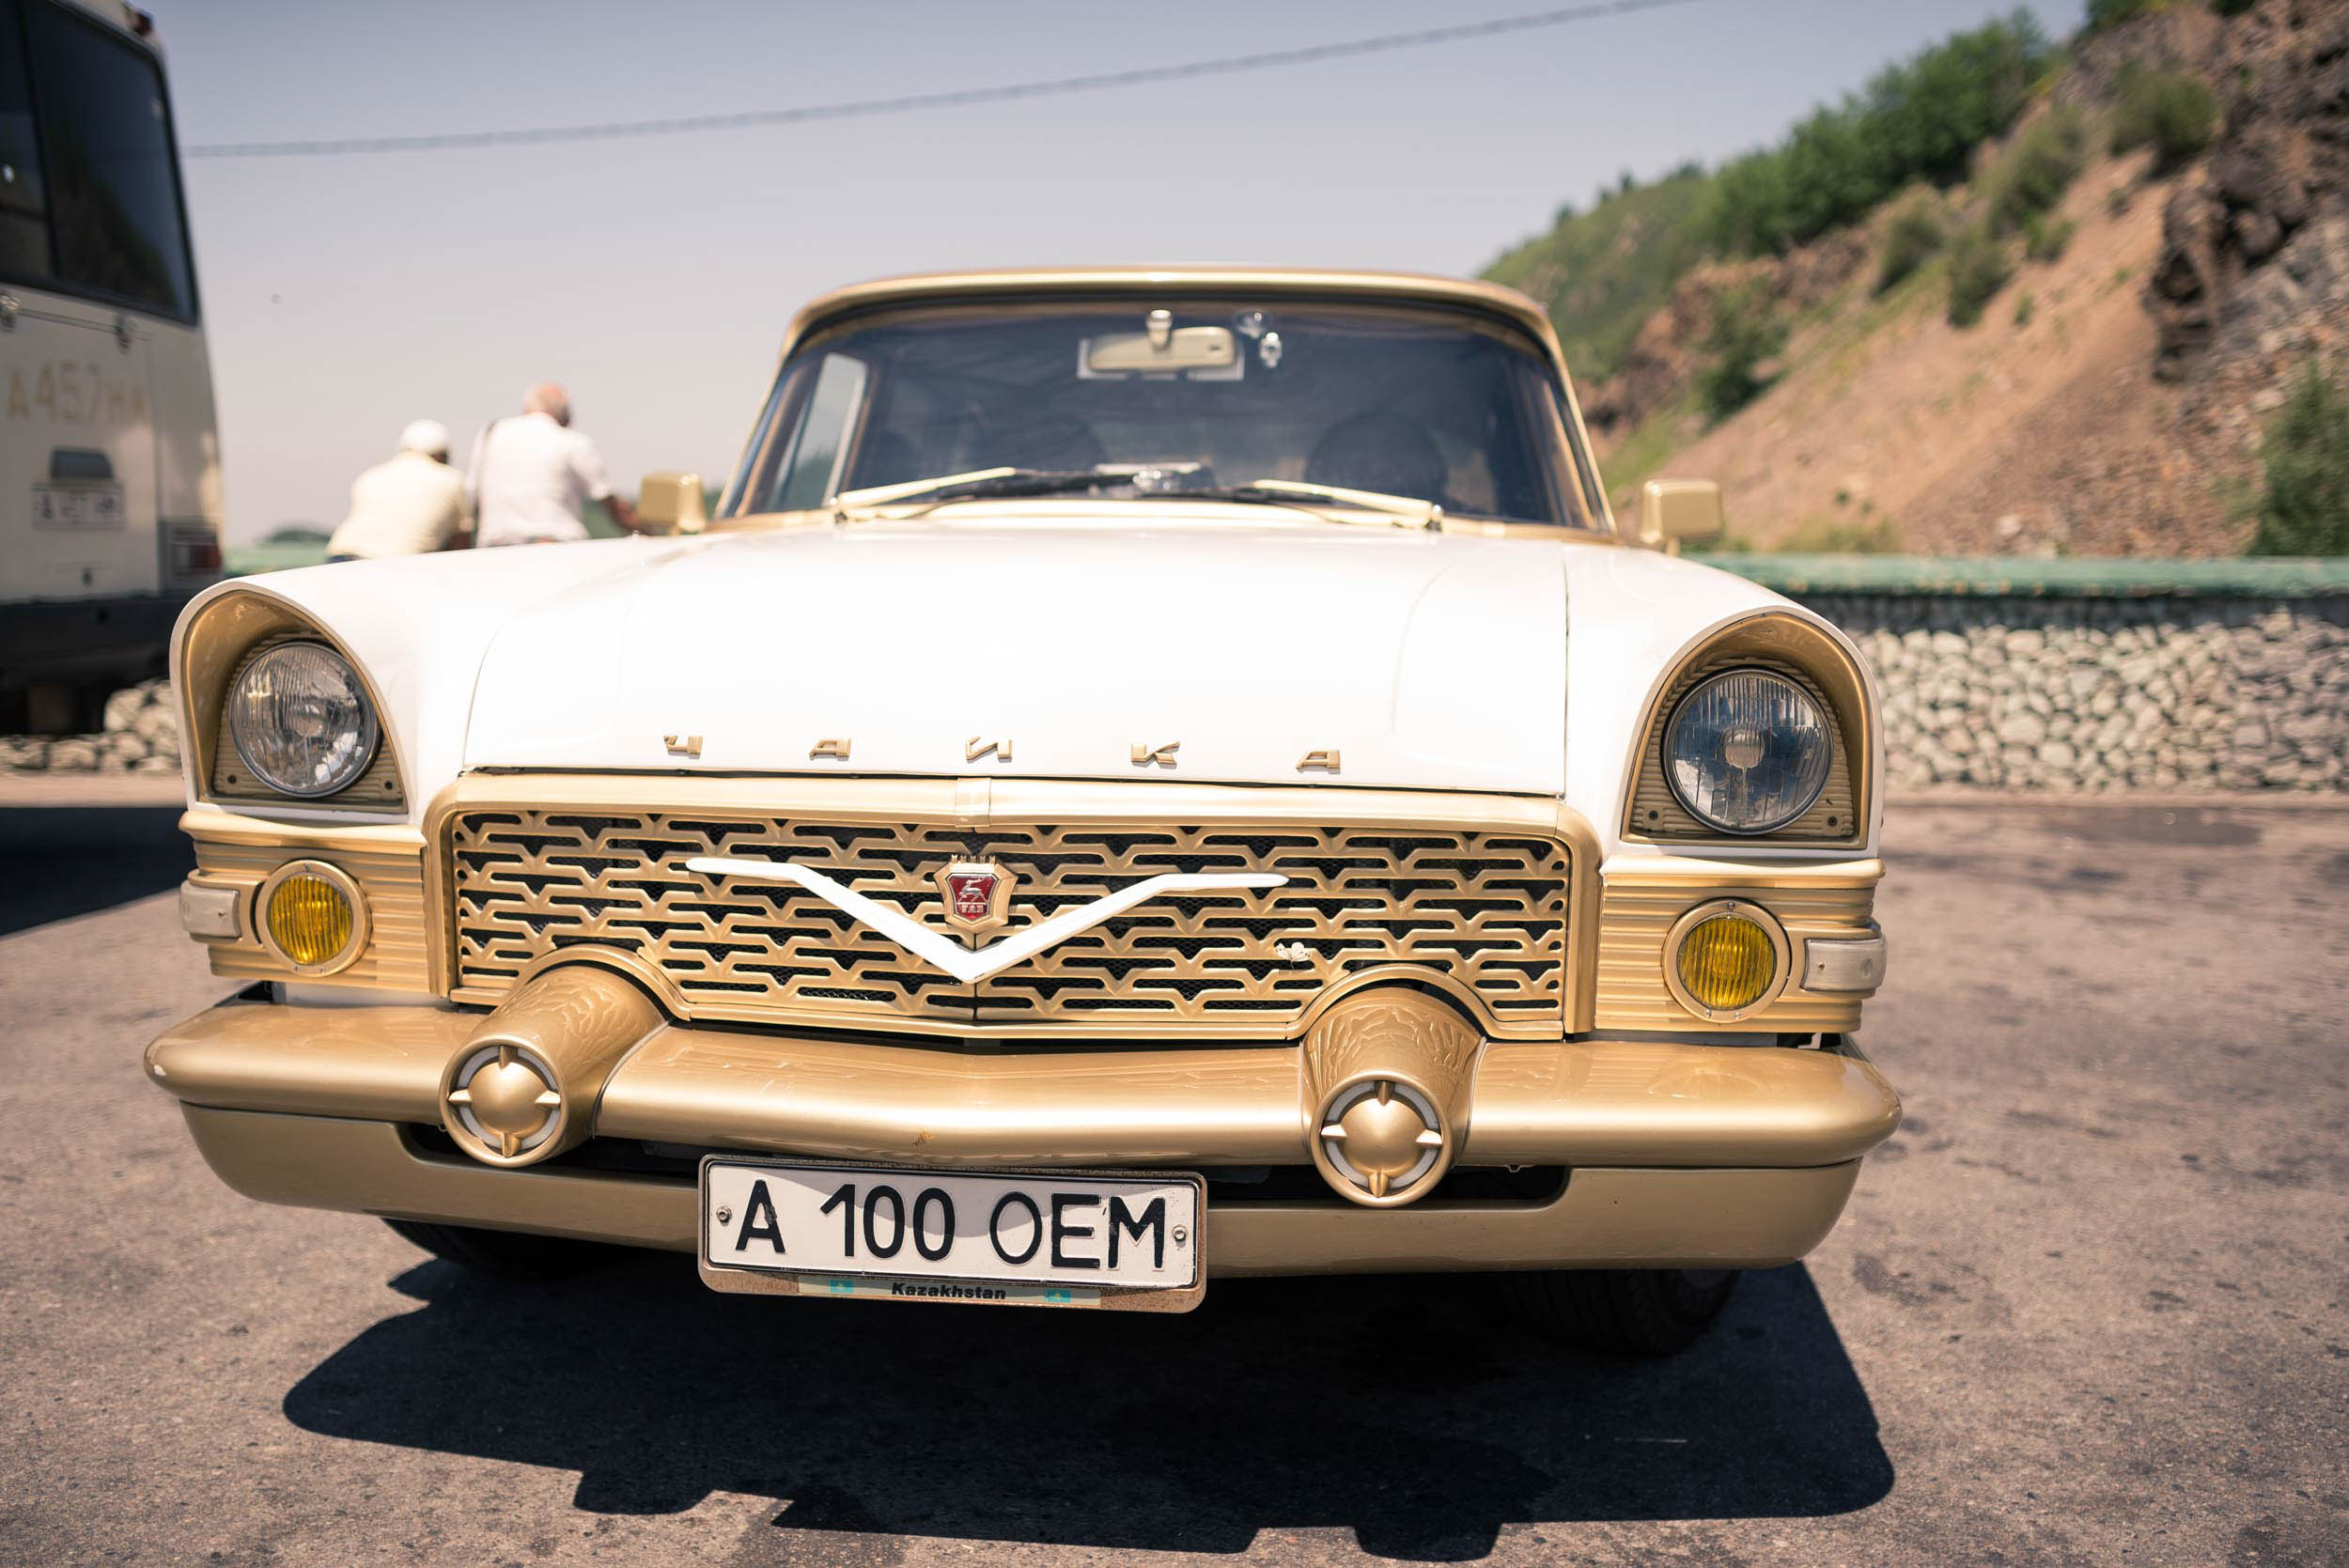 car-tian-shan-almaty-kazakhstan